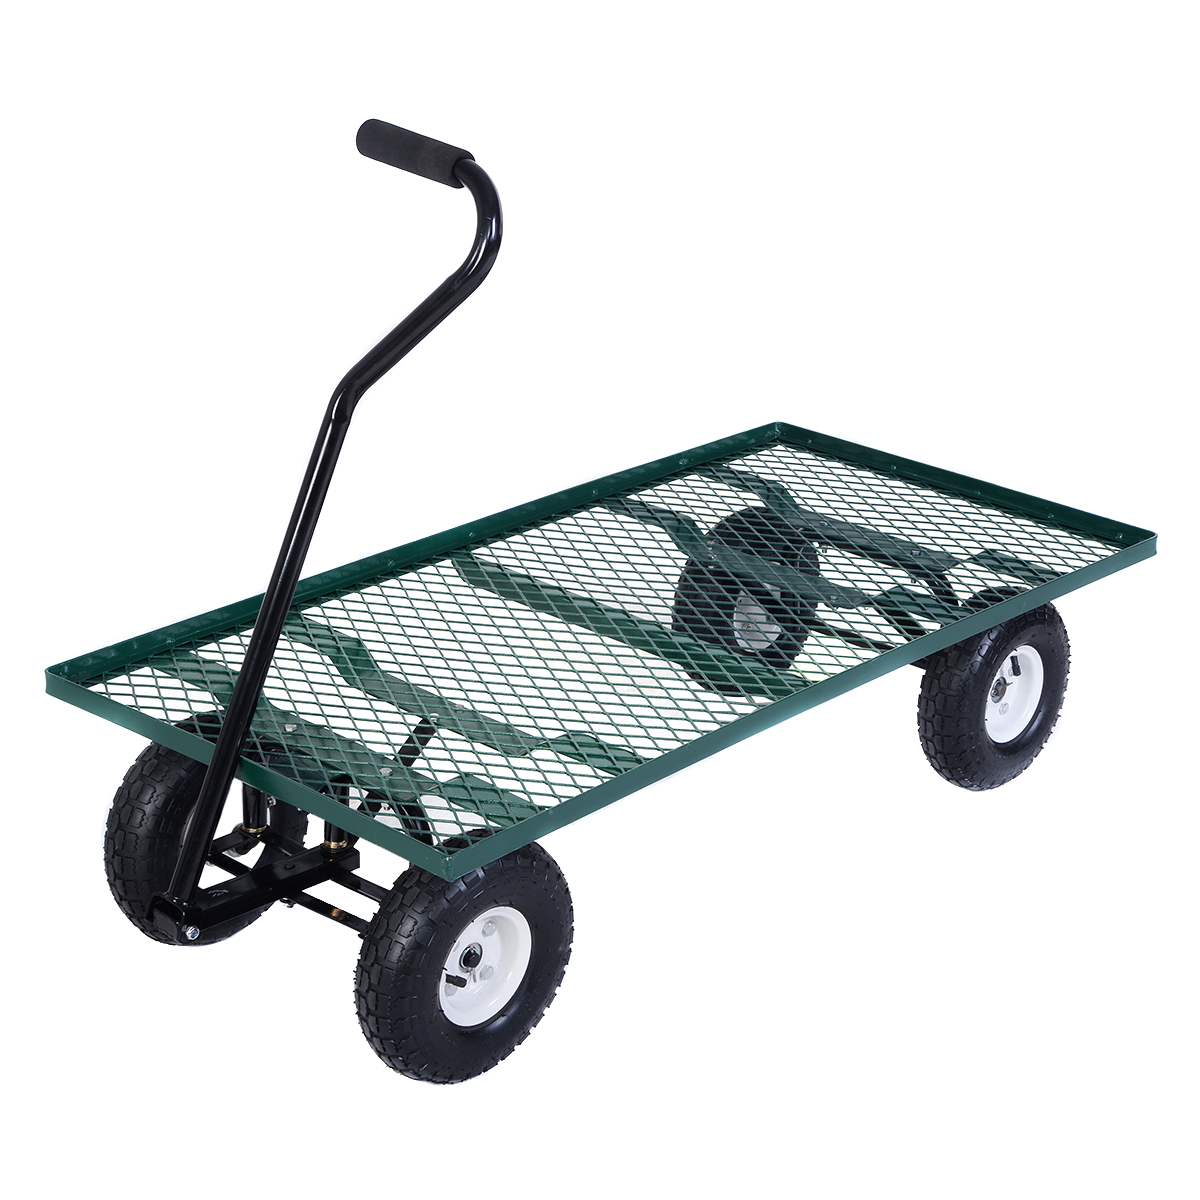 Costway Wagon Garden Cart Nursery Steel Mesh Deck Trailer Heavy Duty intended for proportions 1200 X 1200